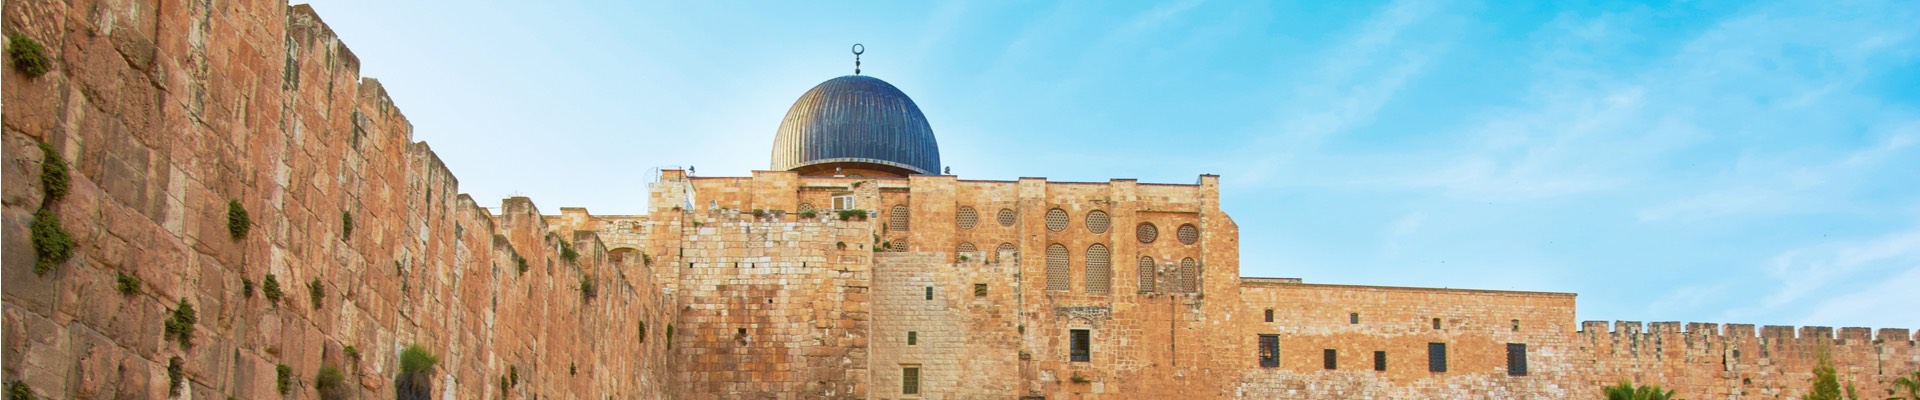 O Melhor de Israel em 10 dias com foco em Jerusalém